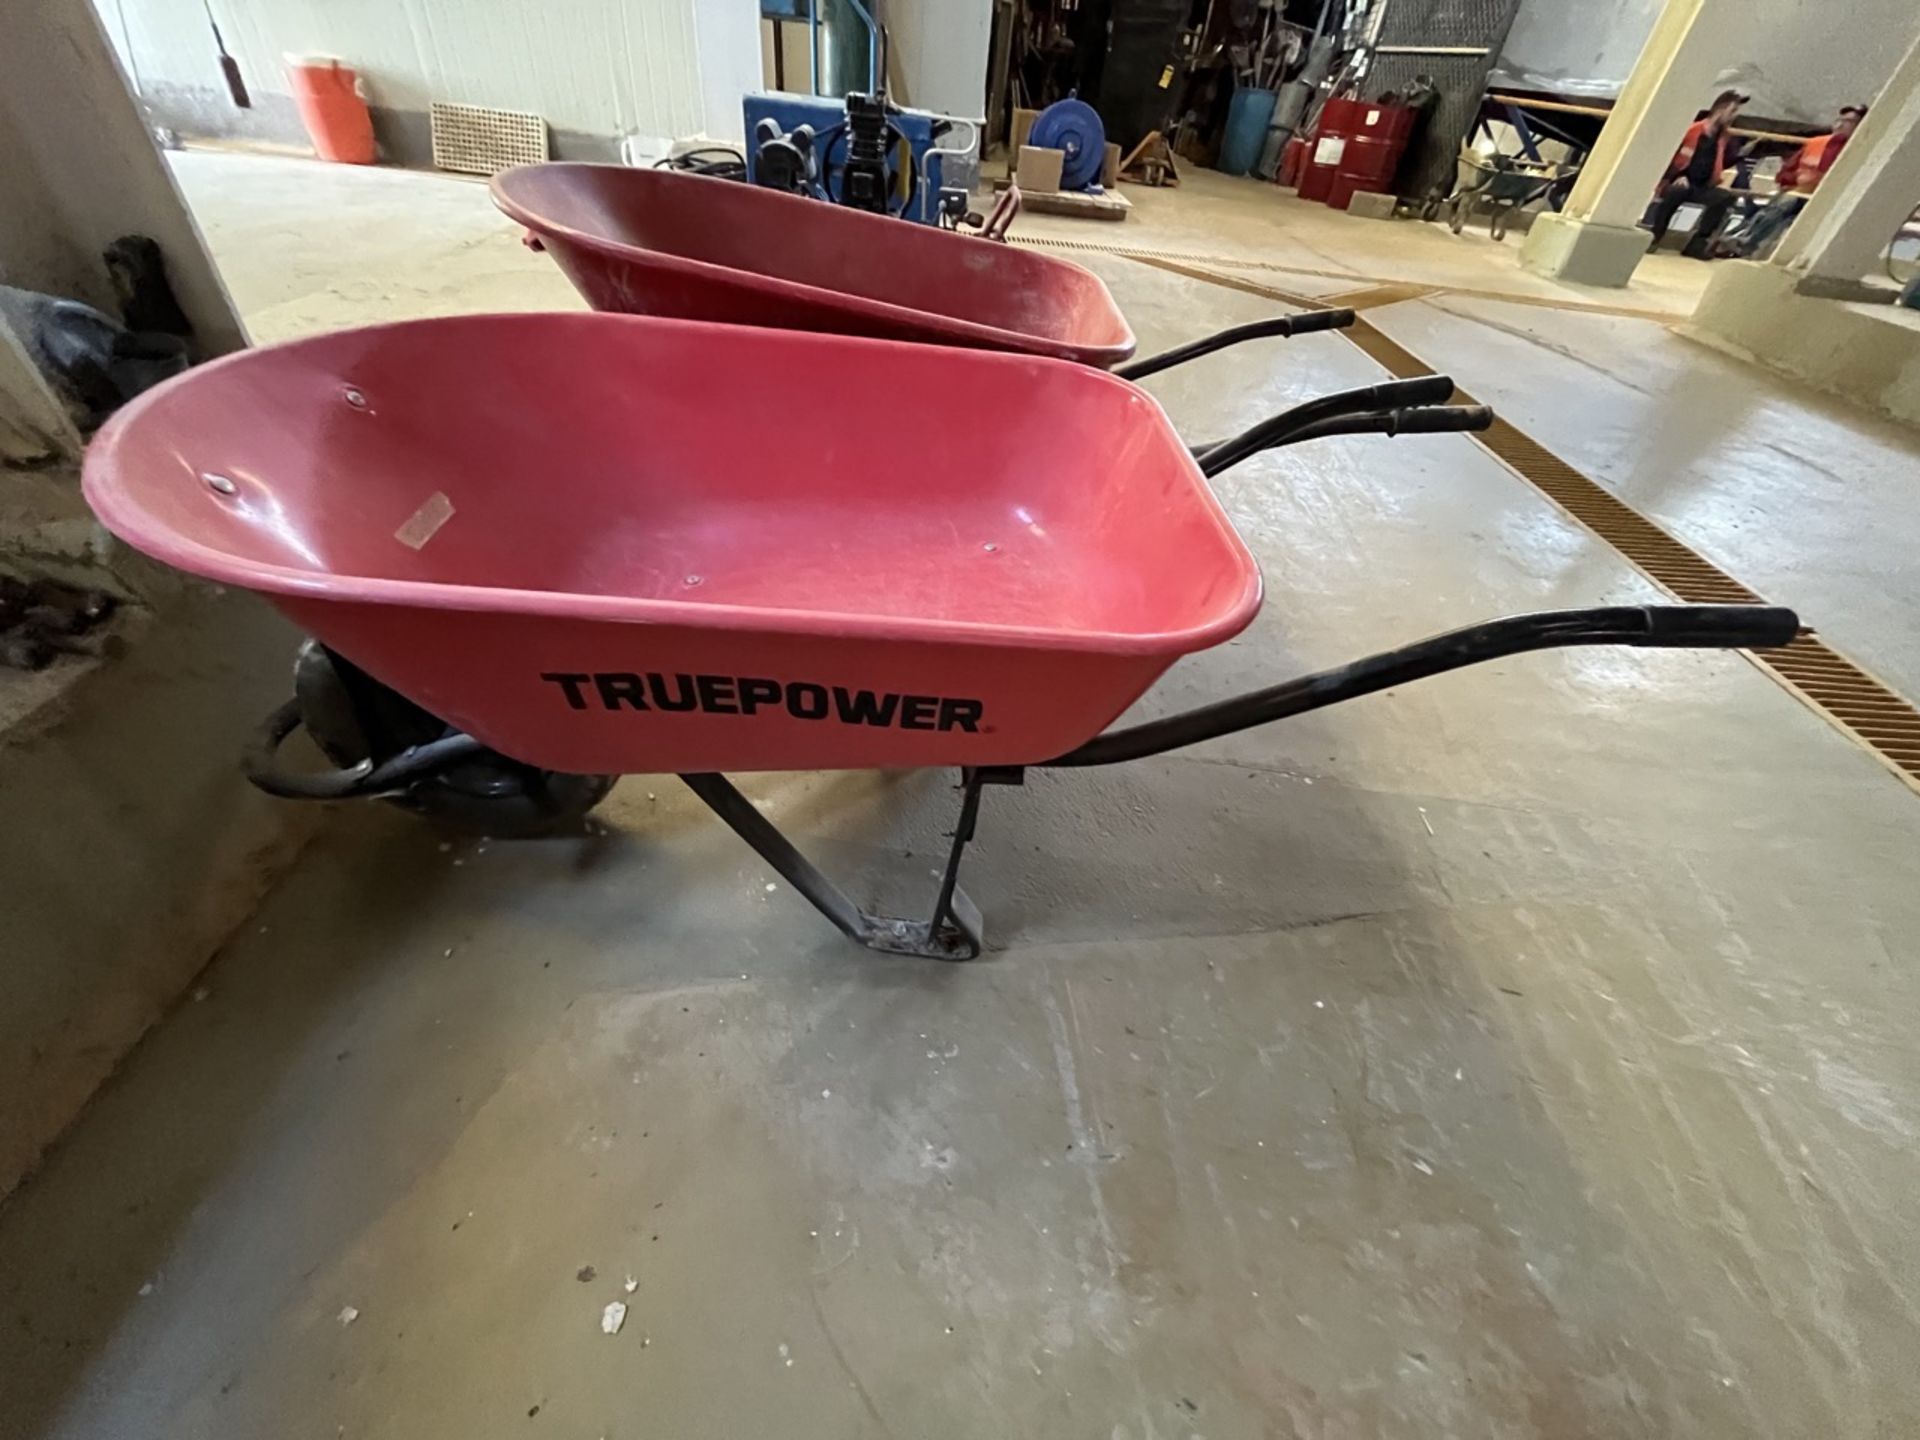 Lot of 2 red Truper wheelbarrows / Lote de 2 carretillas de carga marca Truper en color rojo. - Image 6 of 7